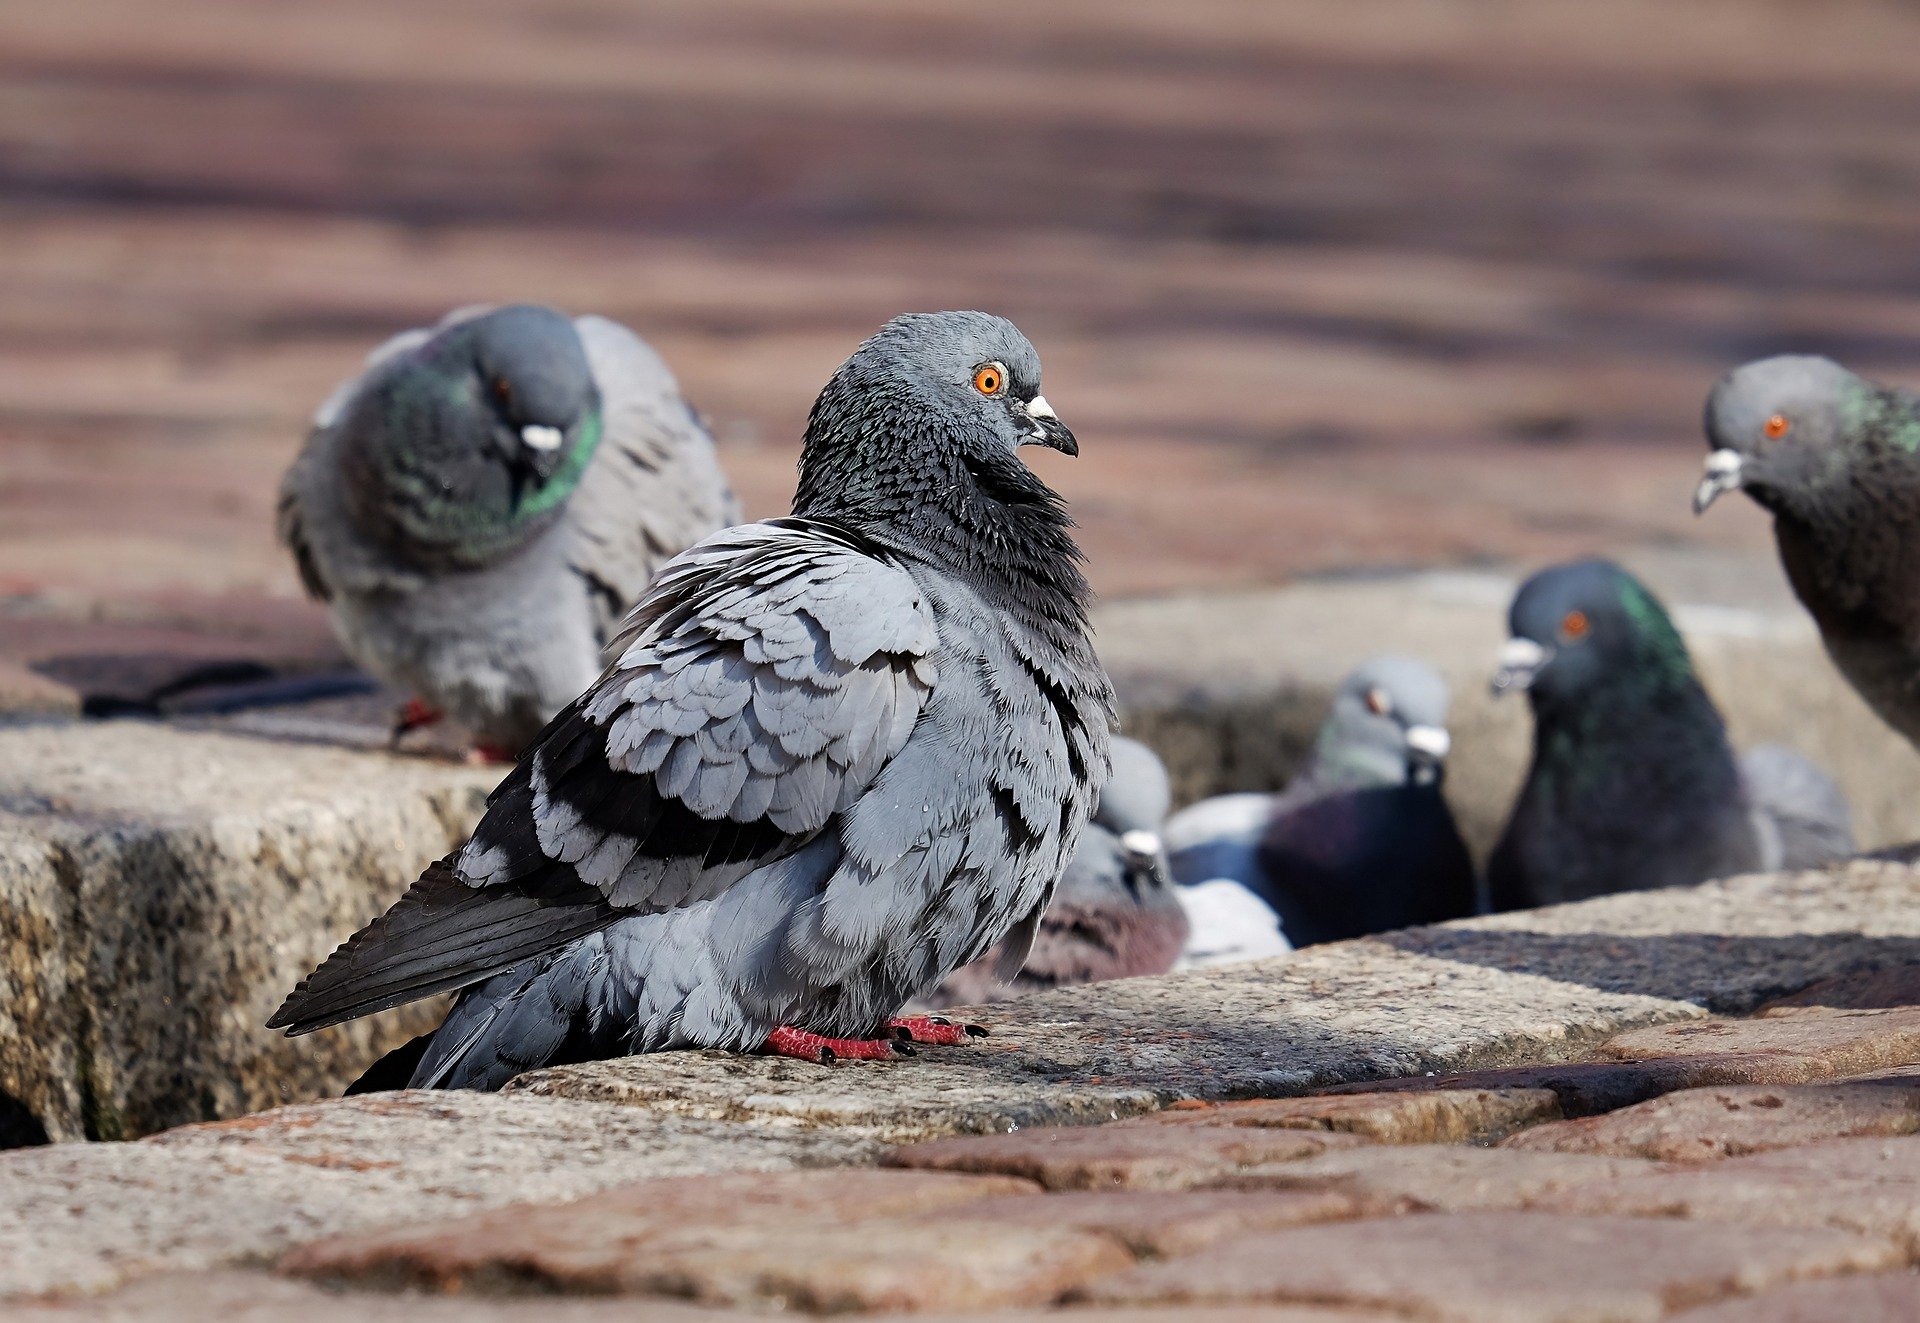 Una ciudad alemana vota a favor de exterminar las palomas rompiéndoles el cuello